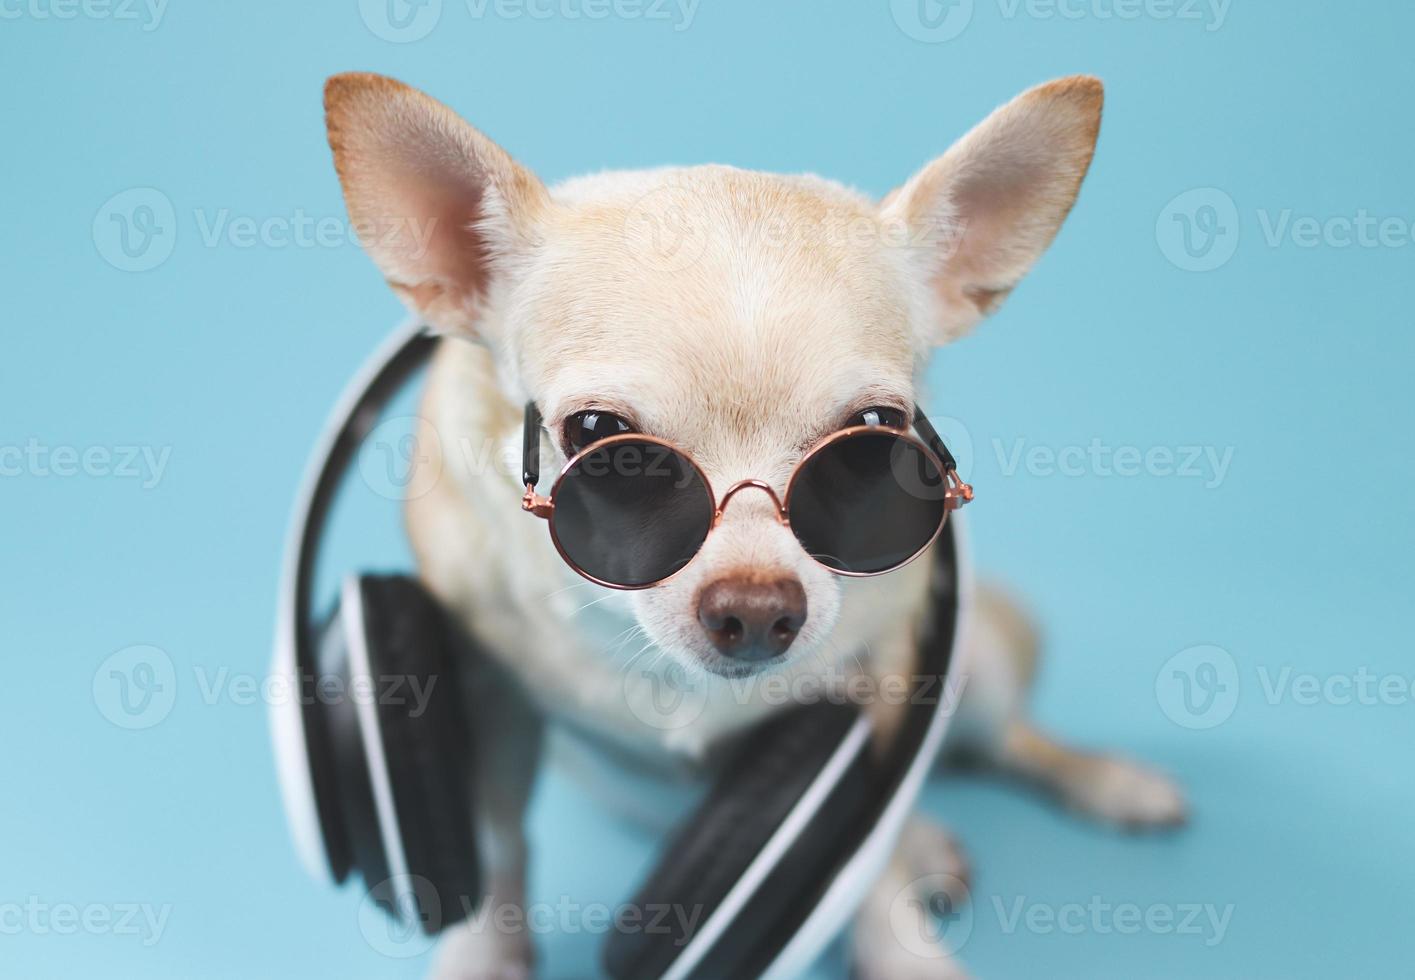 brauner chihuahua-hund mit sonnenbrille und kopfhörern um den hals, sitzend auf blauem hintergrund. Sommerreisekonzept. foto